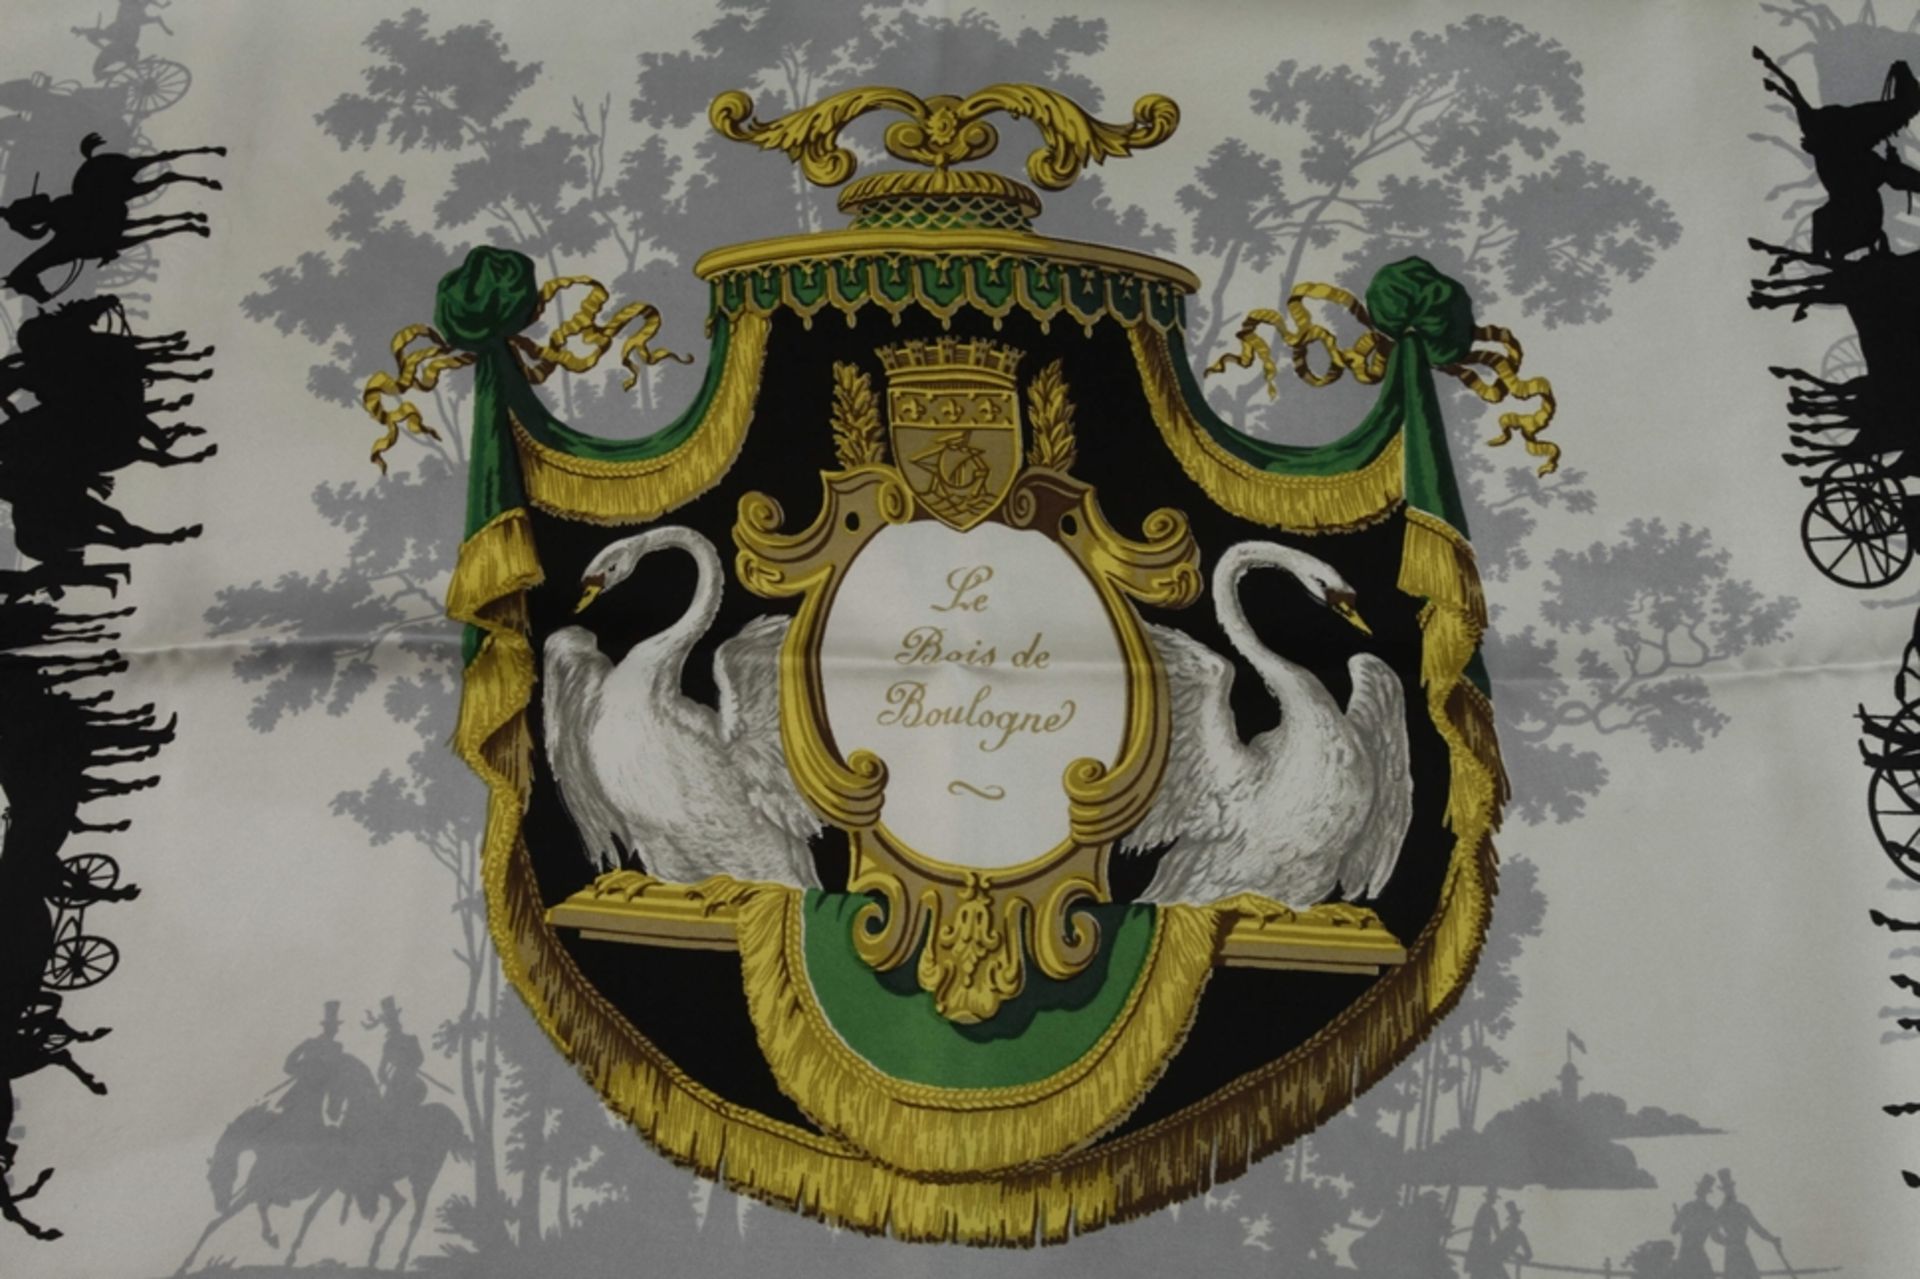 Hermès silk scarf "Le Bois de Boulogne" - Image 2 of 4